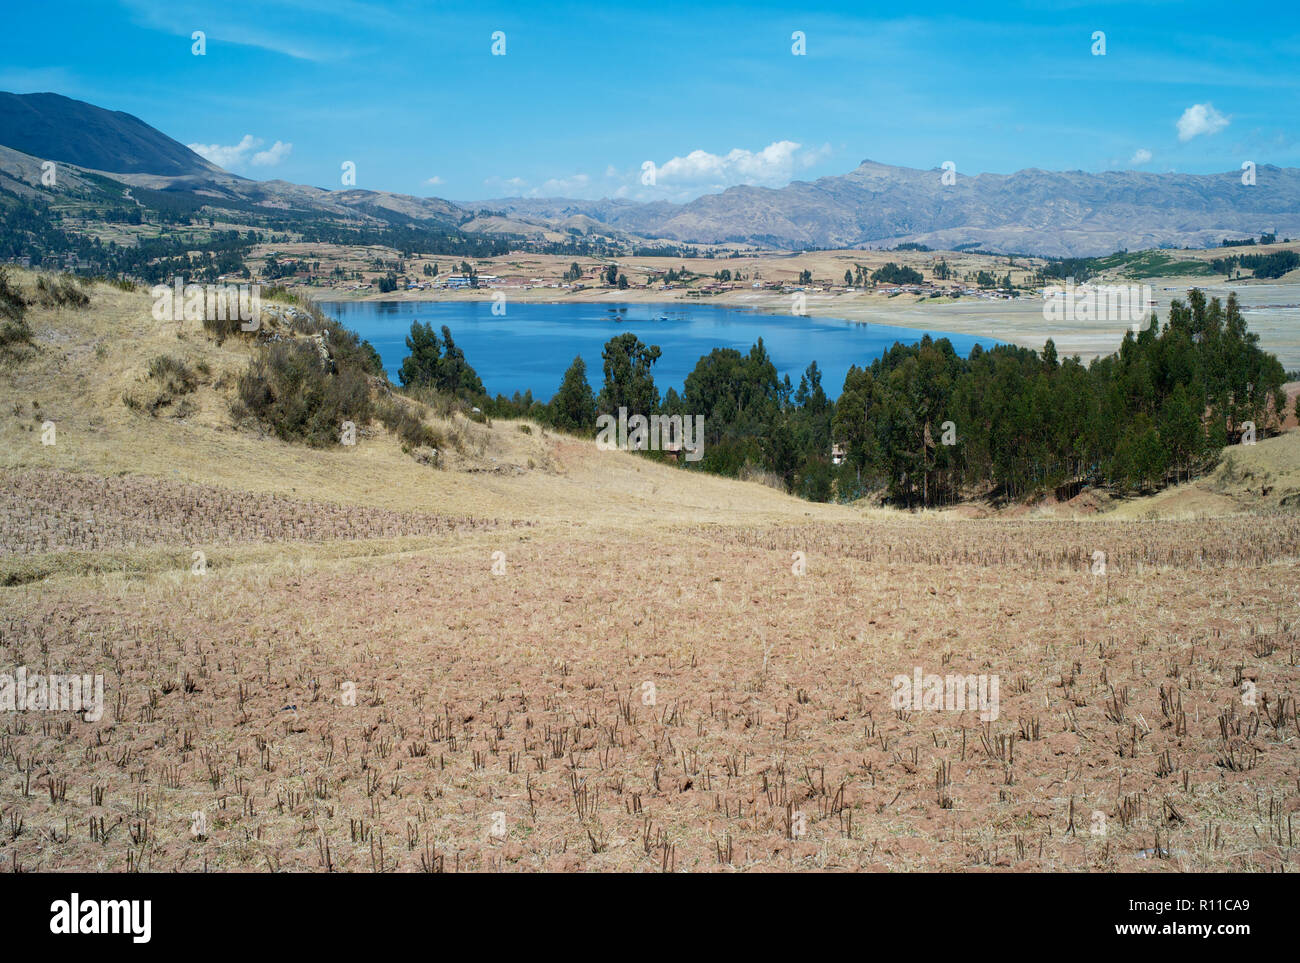 Bleu foncé envoûtant lac entouré de champs d'herbe d'or à sec dans les Andes péruviennes, près de Chinchero, Pérou Banque D'Images